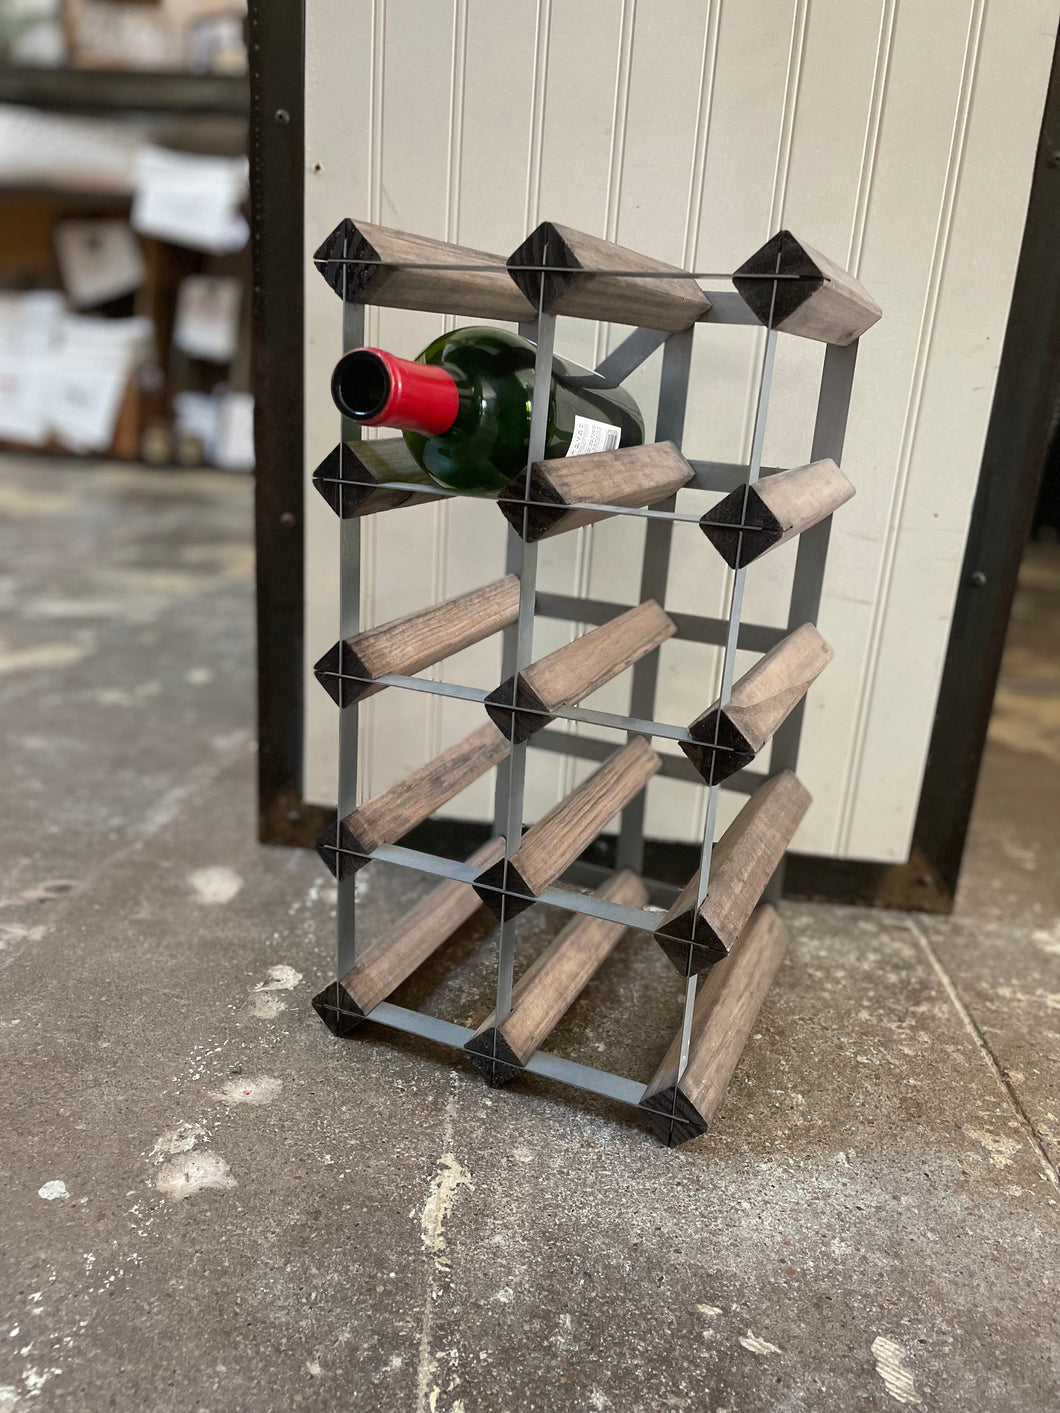 Wood & Metal Wine Rack